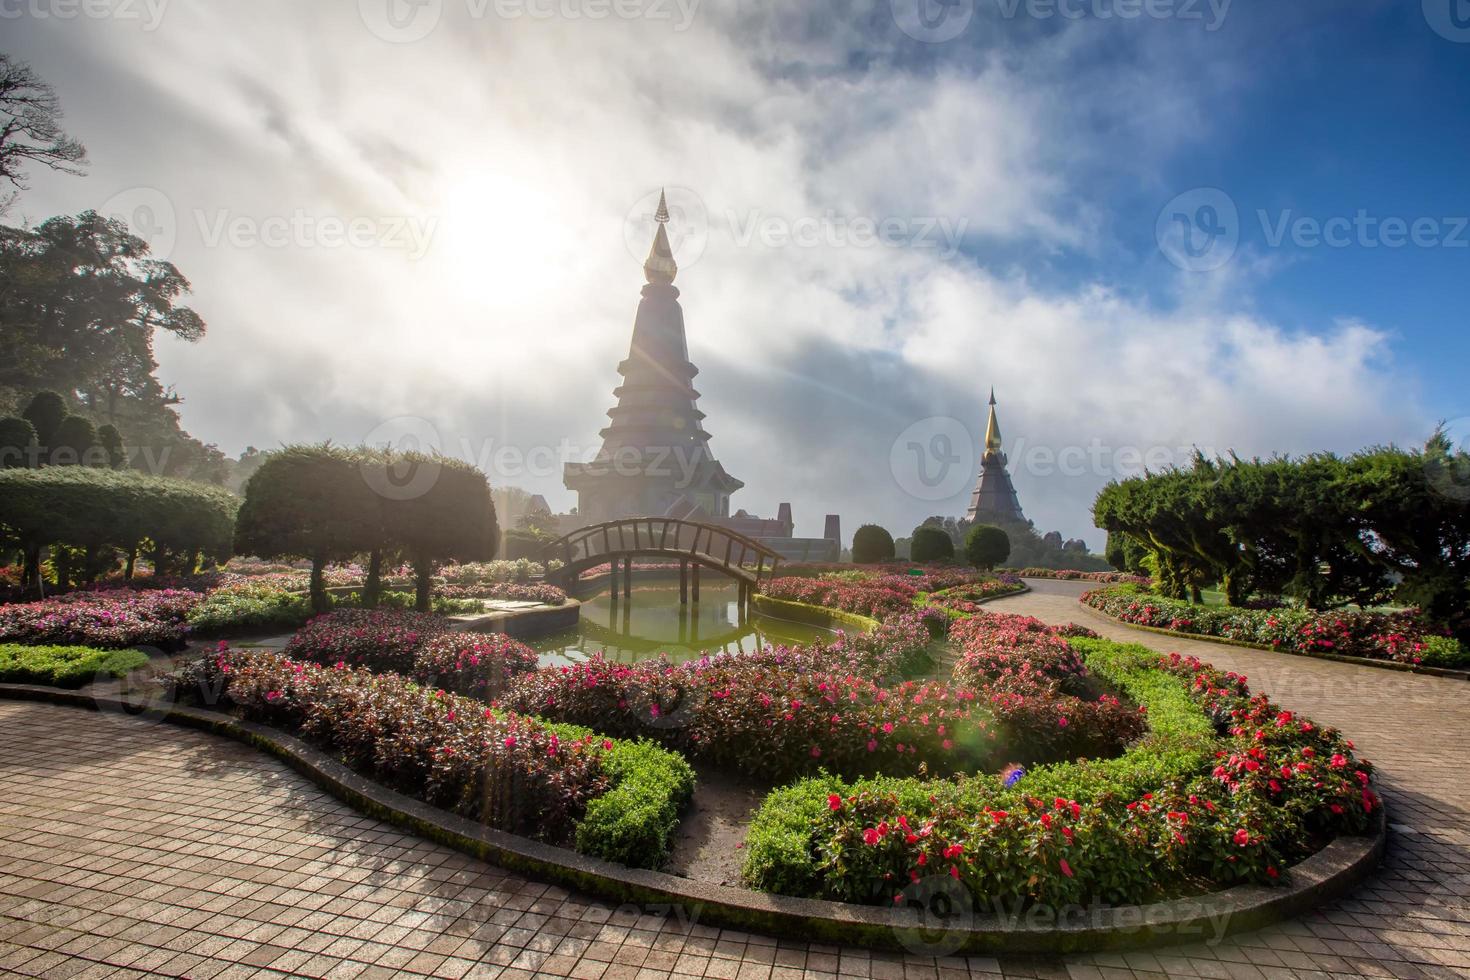 thailandia chiang mai, doi inthanon stupa buddista punto di riferimento turistico del nord thailandia. bei paesaggi veduta aerea. foto